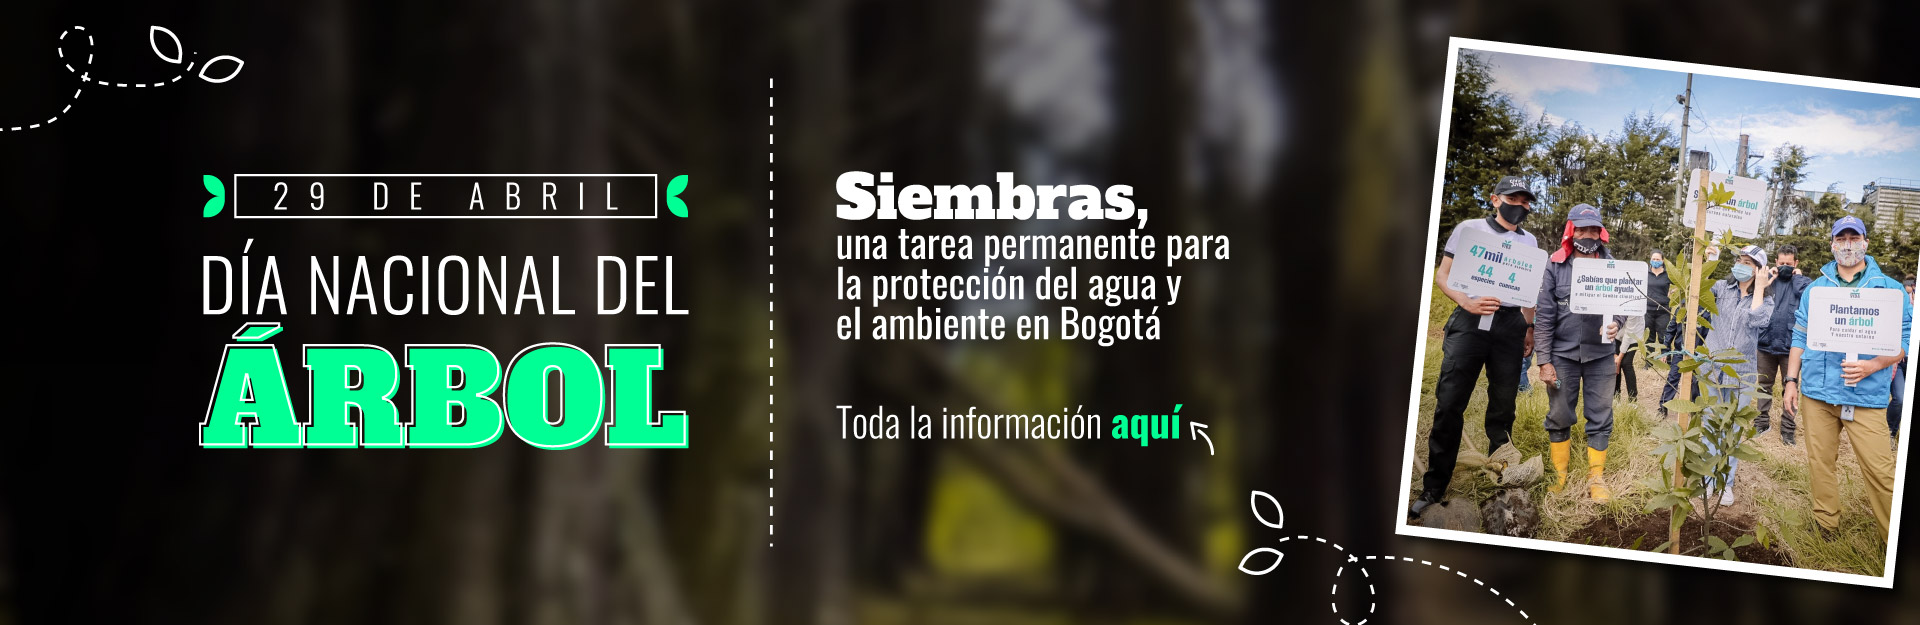 Acueducto de Bogotá ha sembrado más de 20 mil árboles en las cuencas de los ríos.